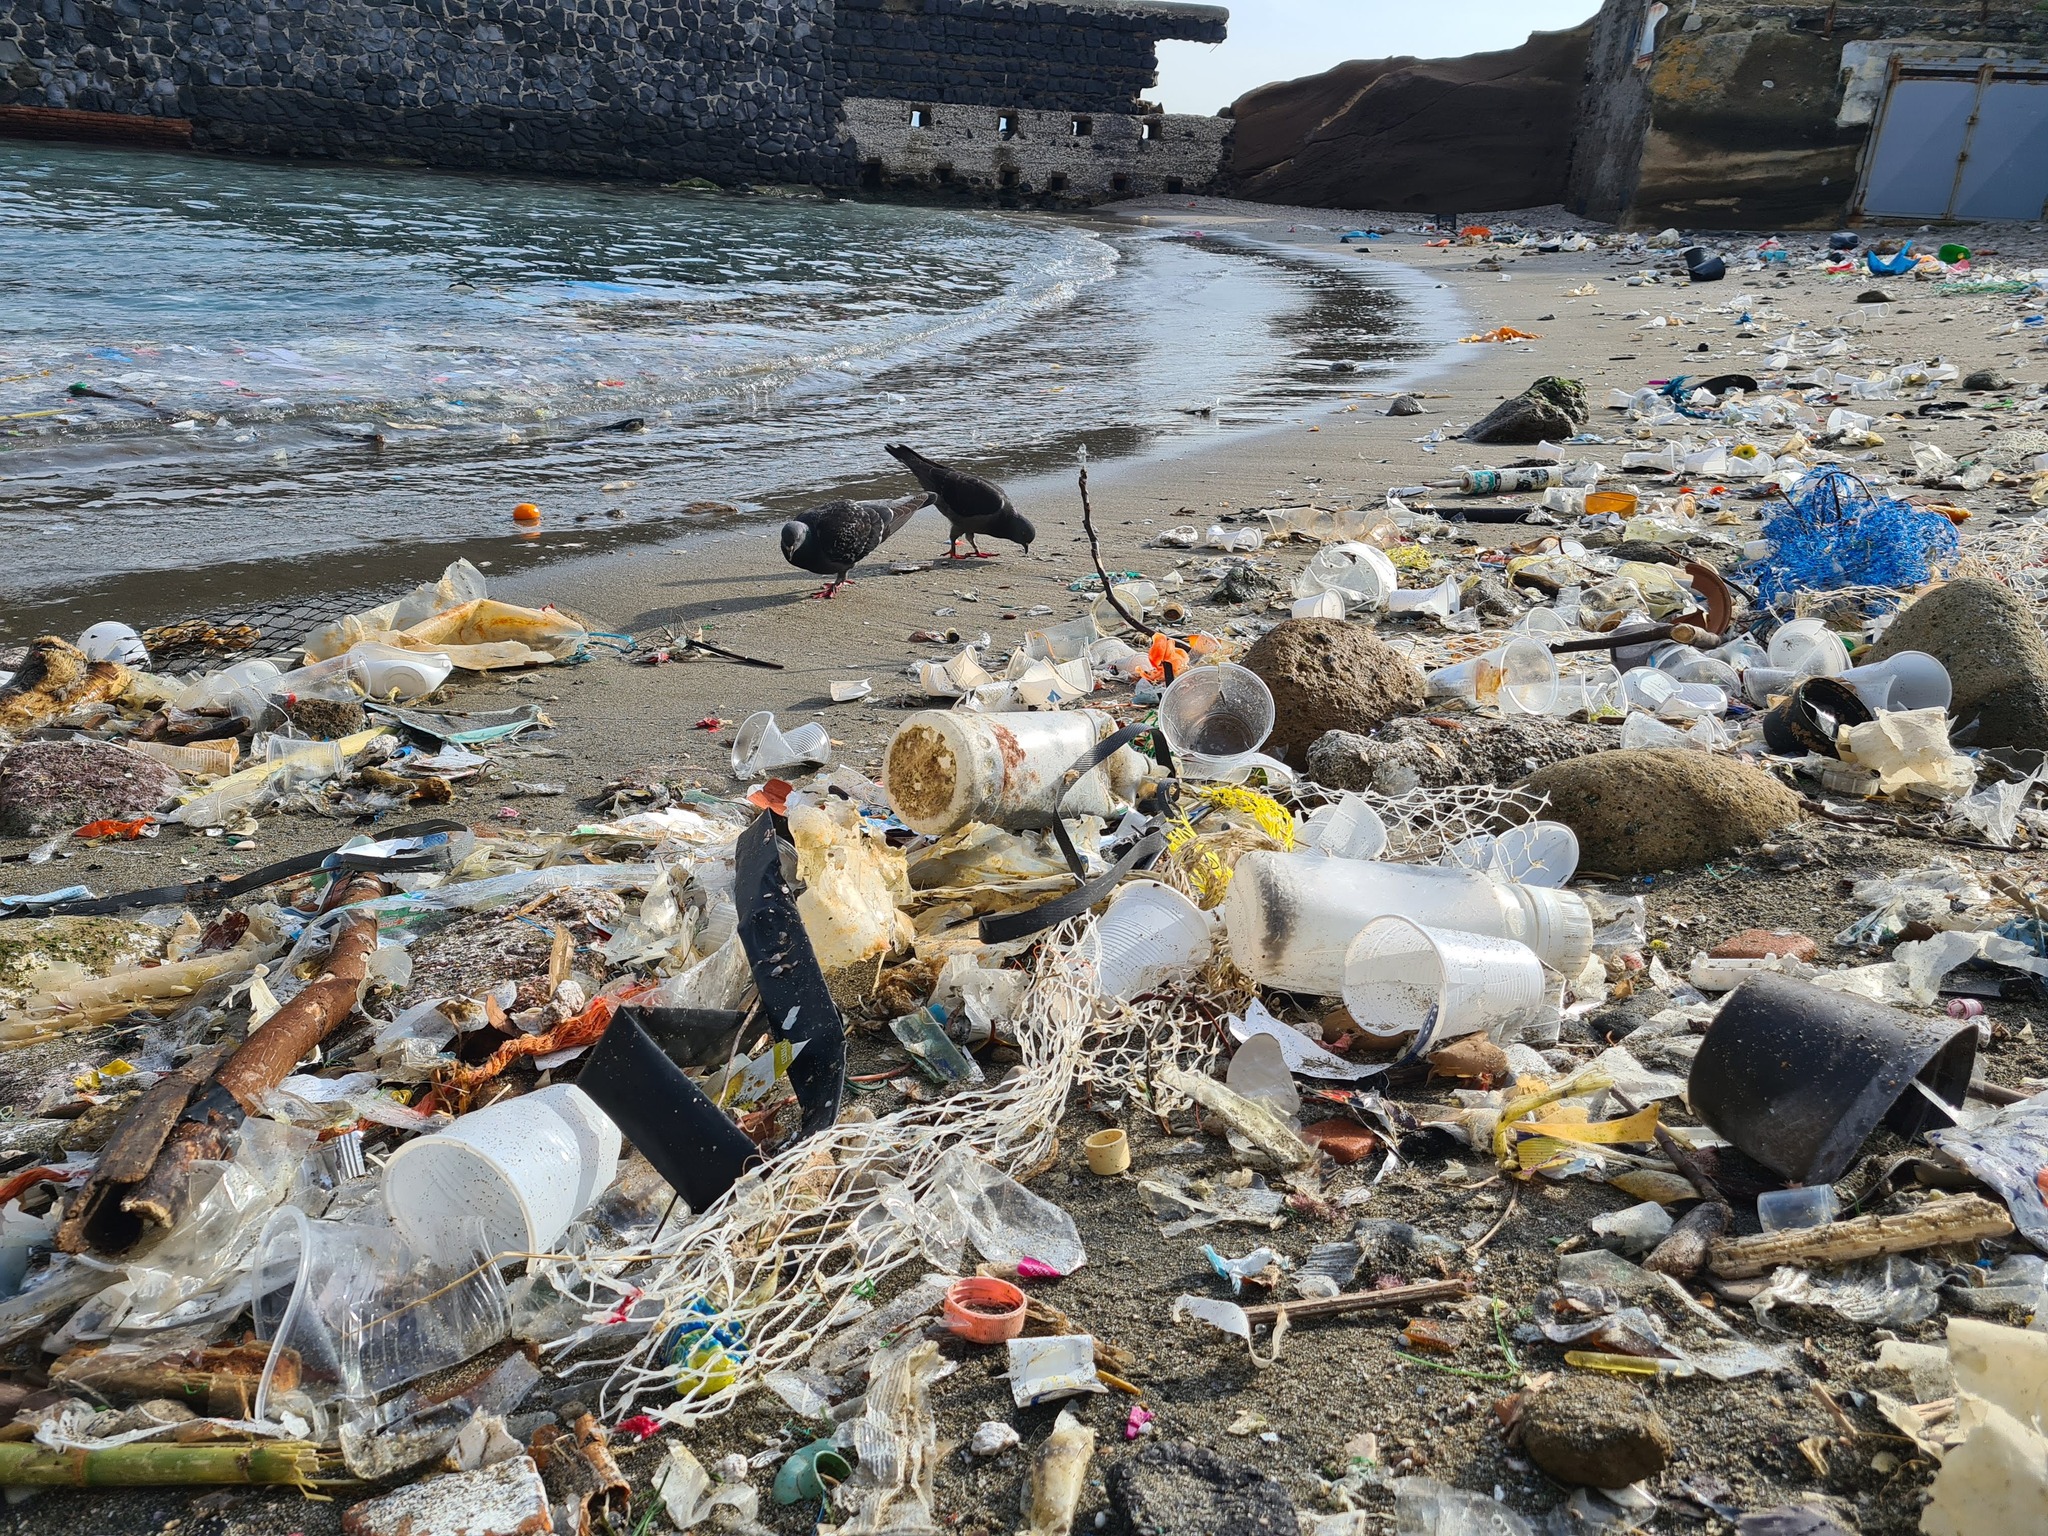 L’Area Marina Protetta – Parco Sommerso di Gaiola invasa da plastica e rifiuti: l’appello di Marevivo